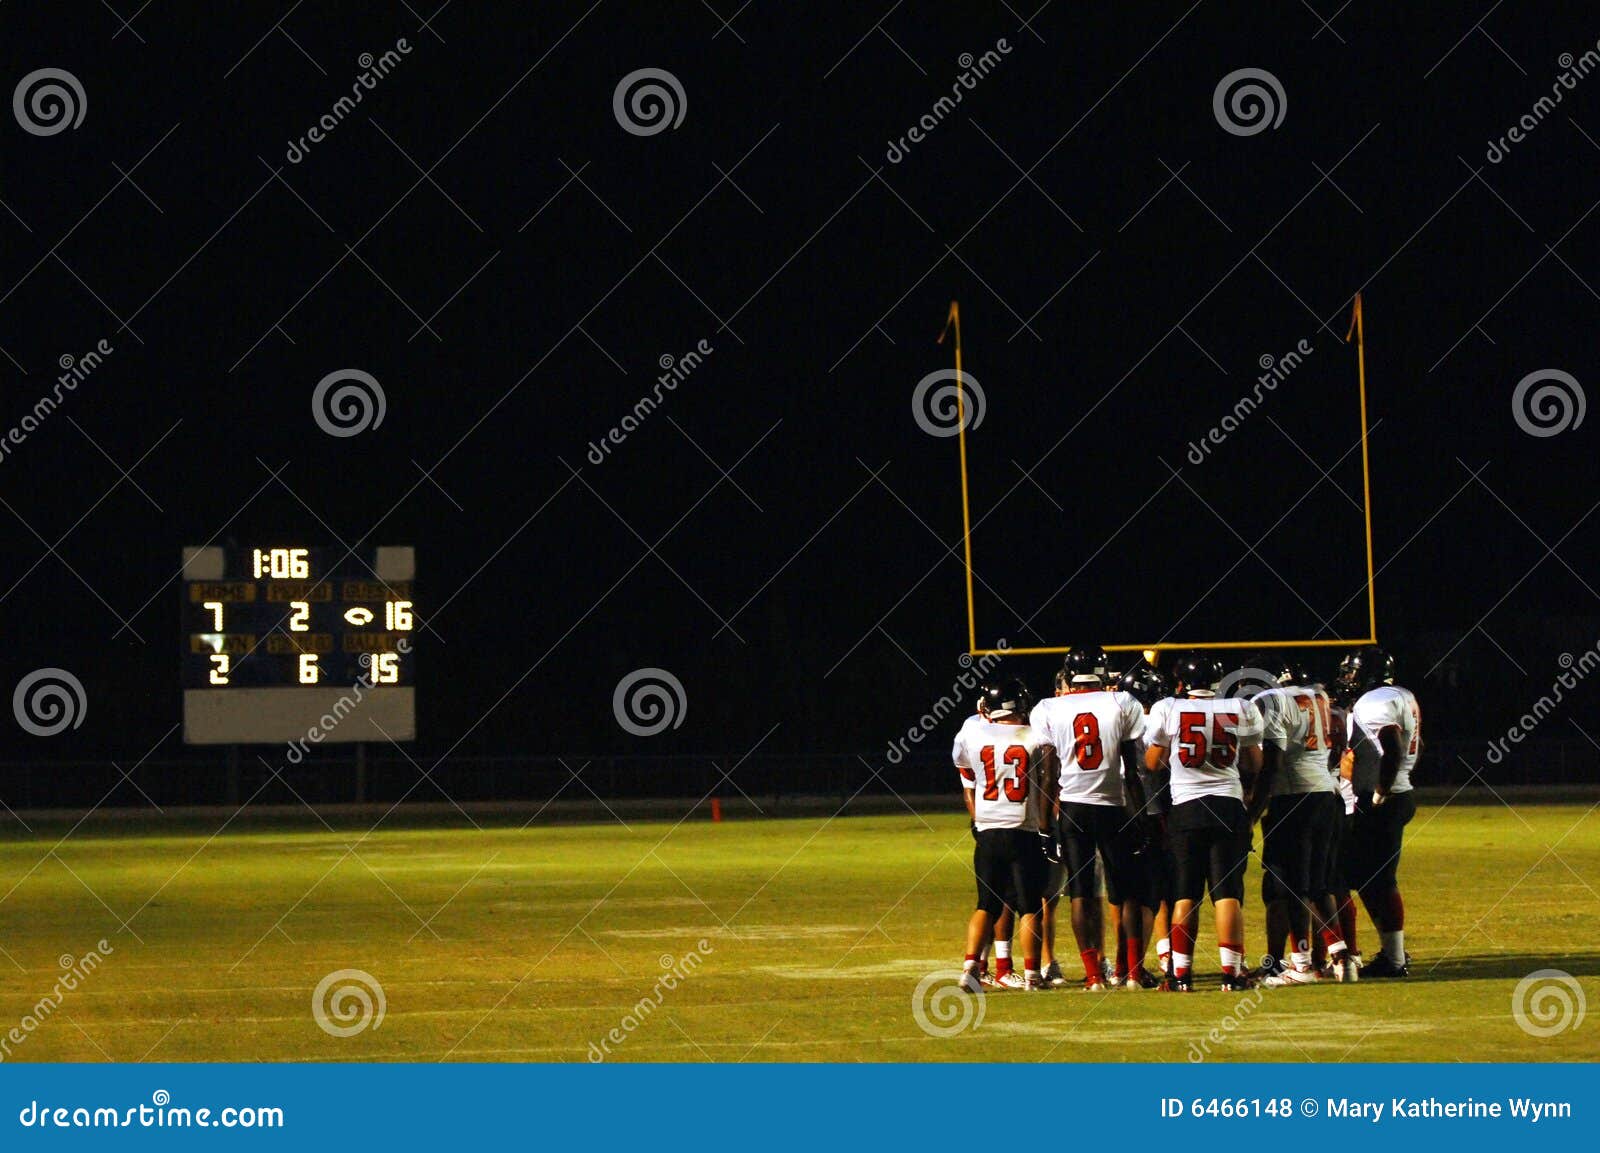 football huddle at night game